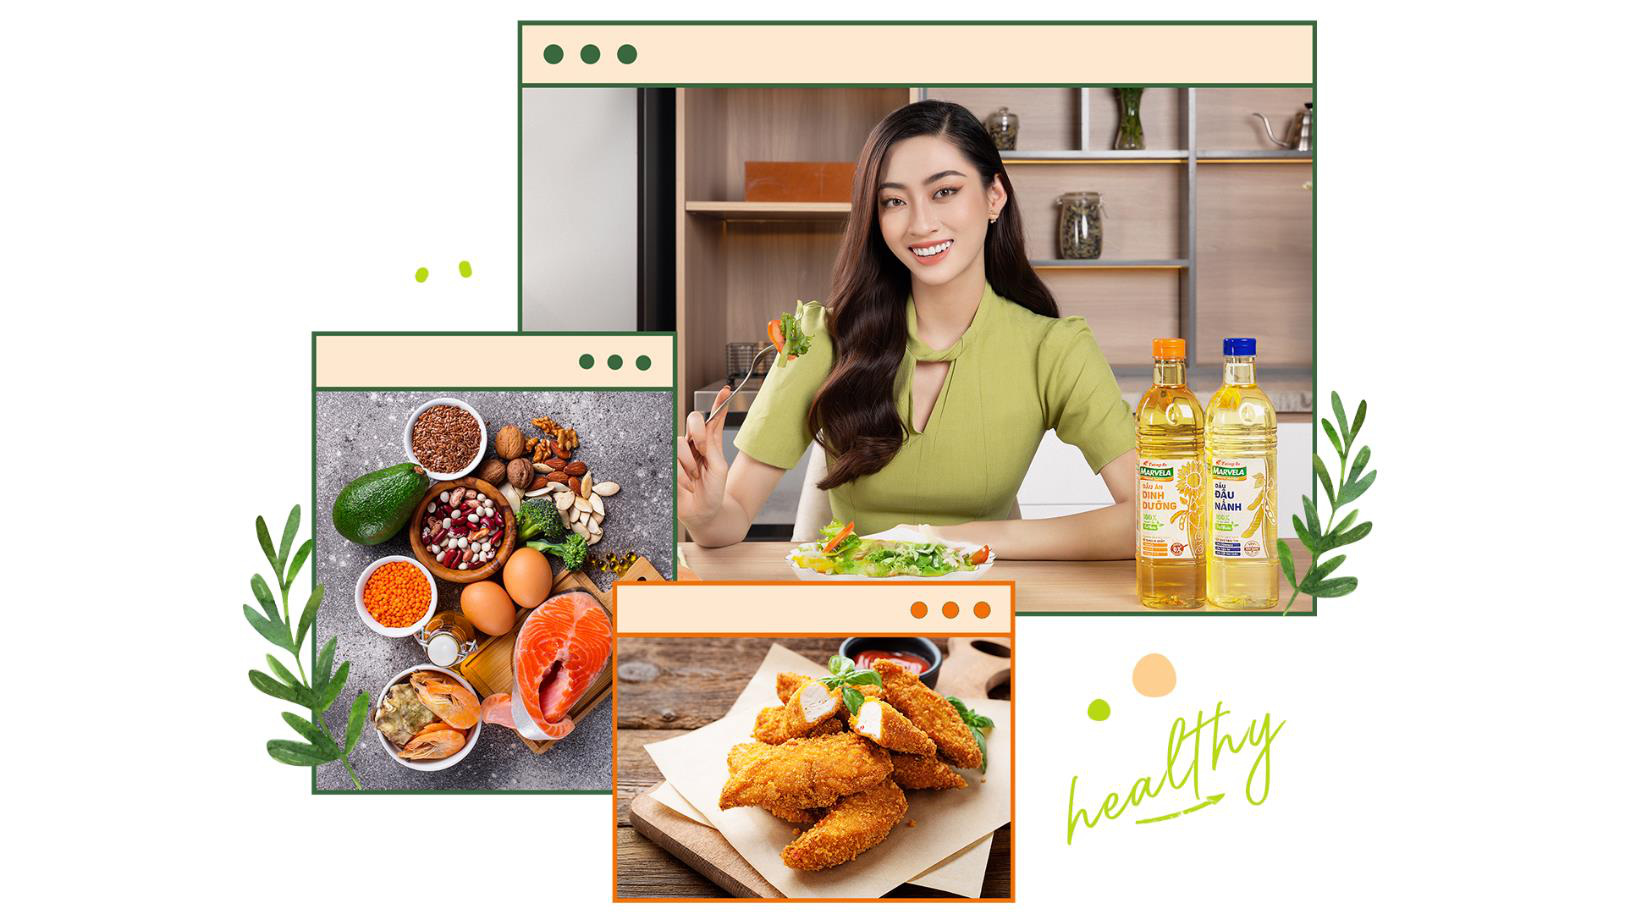 Bật mí 3 bí quyết ăn uống “healthy” của hoa hậu Lương Thùy Linh - Ảnh 2.